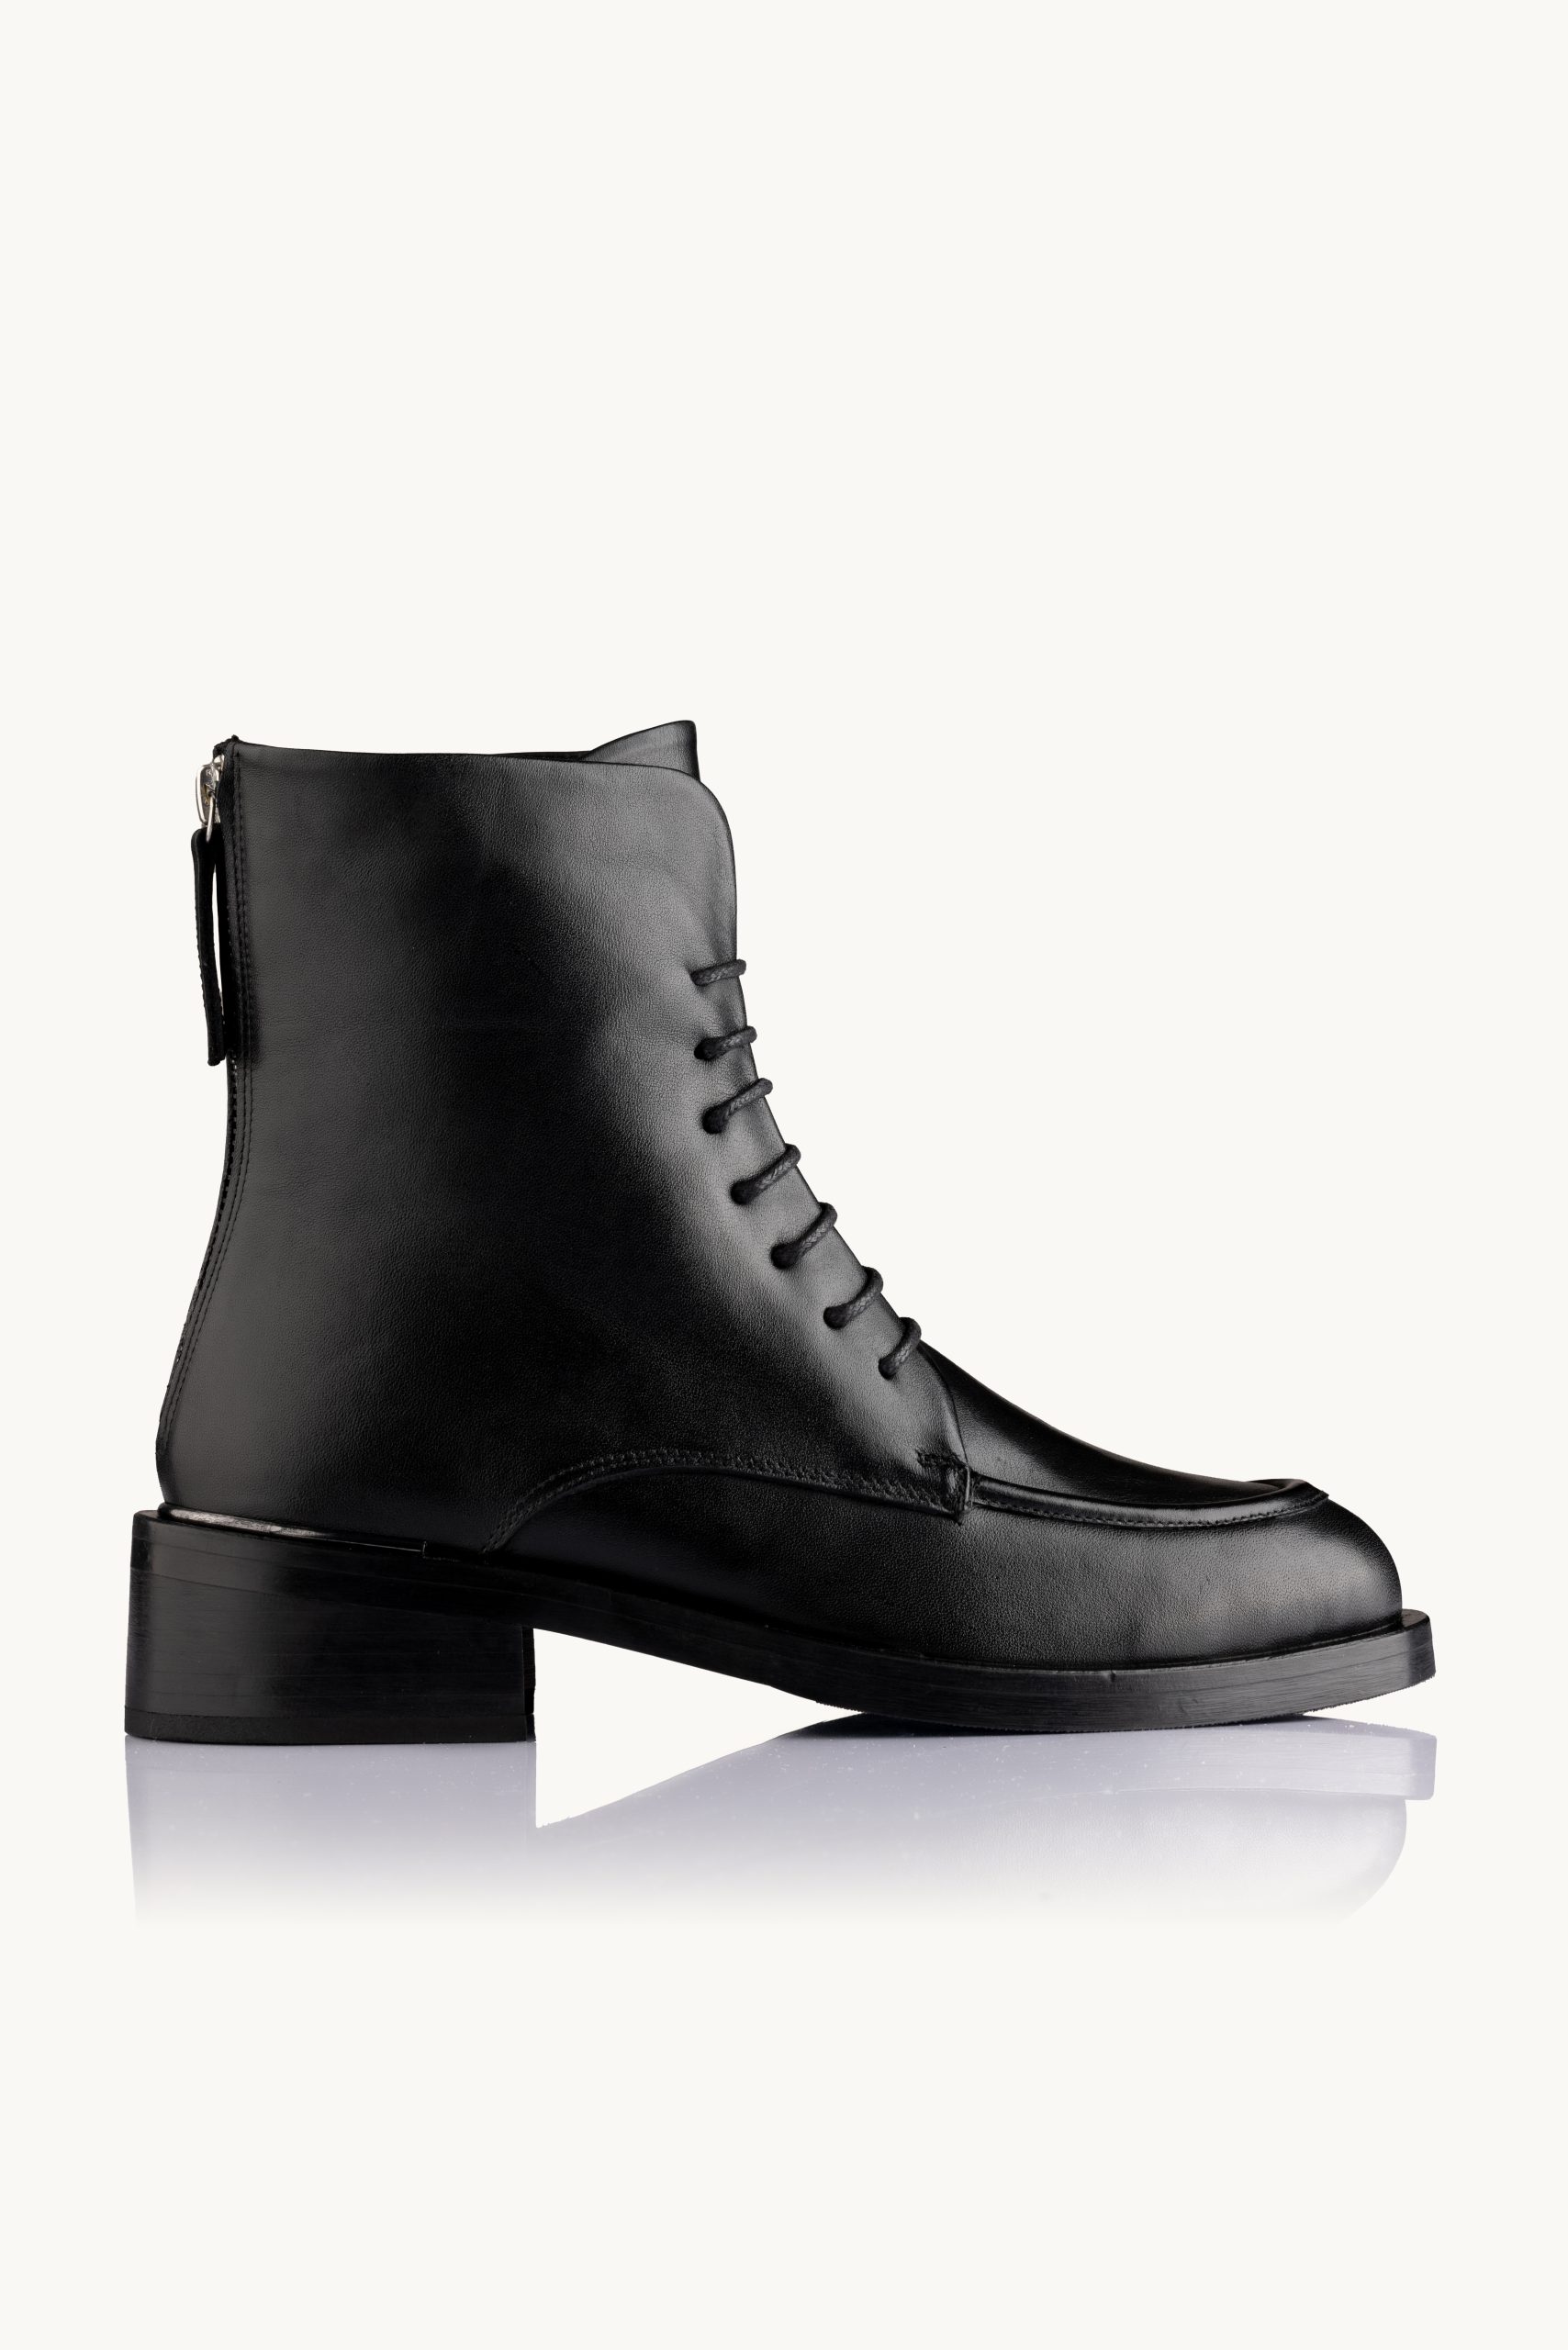 Kratke čizme - Tangled Joy - Crne kratke čizme sa rajsferšlusom pozadi i pertlom napred.